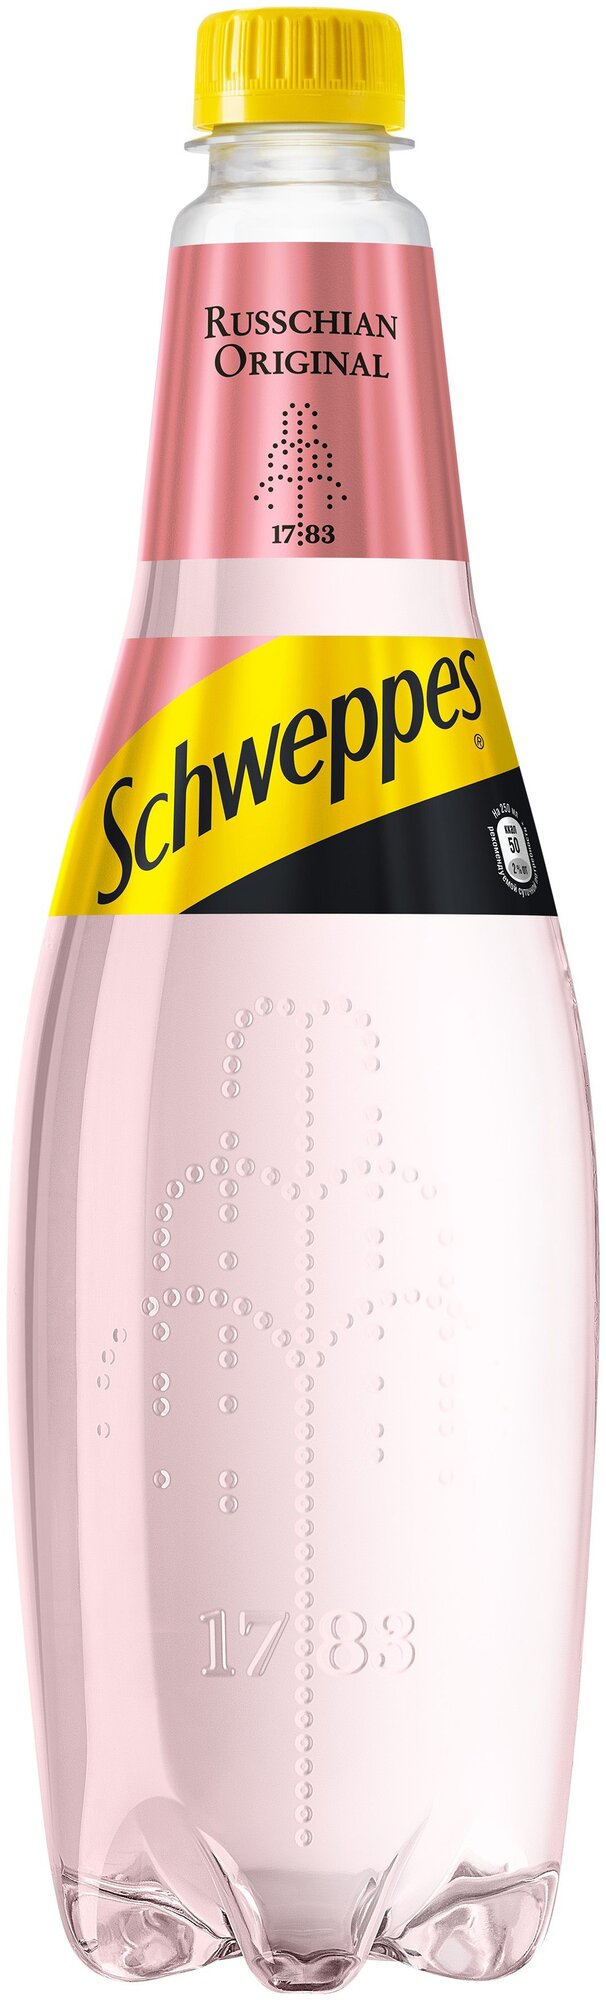 Напиток безалкогольный газированный Schweppes The Original Russchian